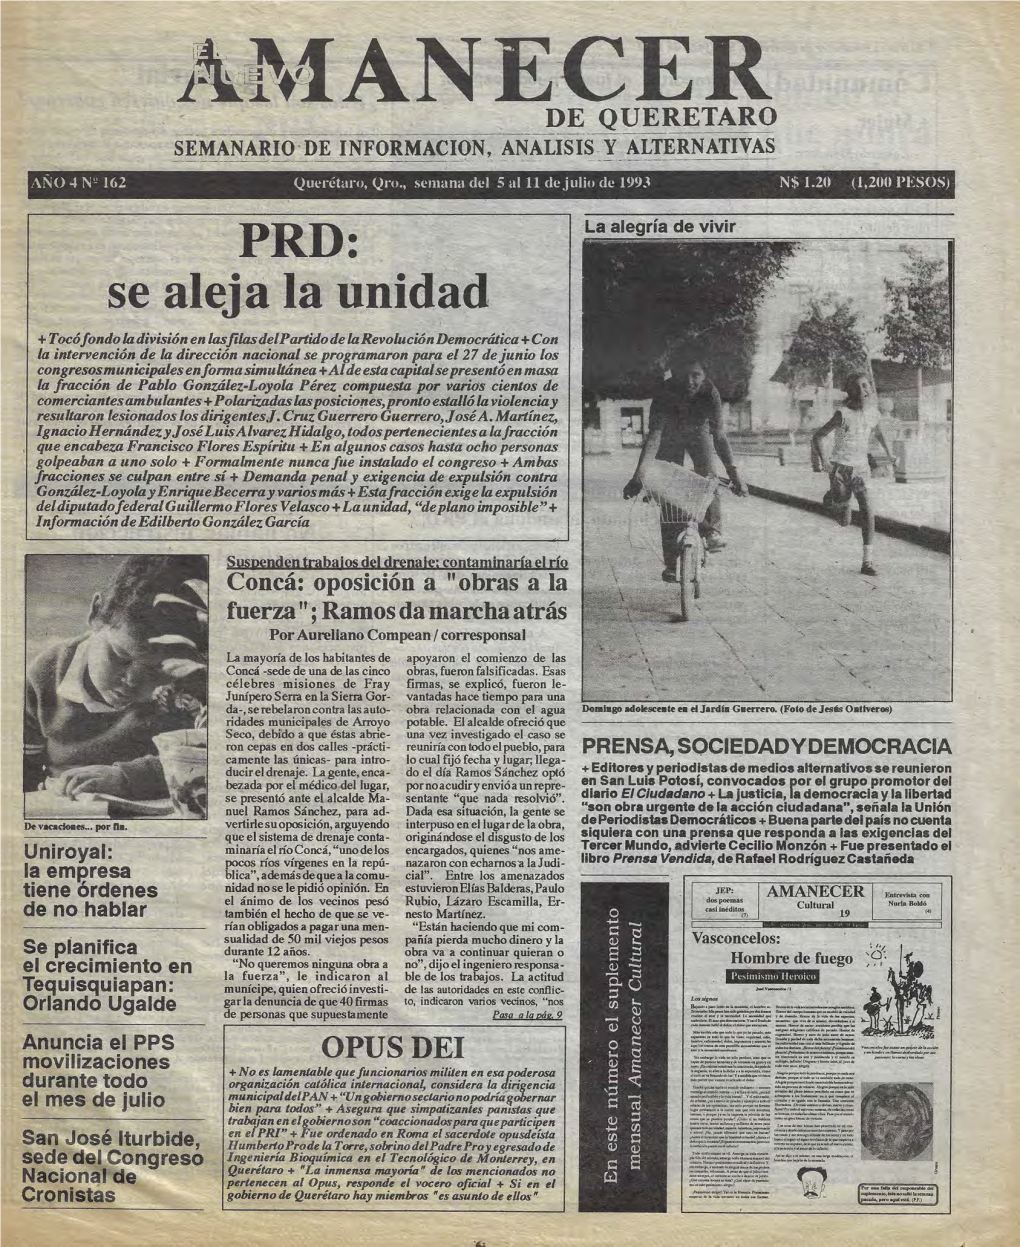 El Nuevo Amanecer De Querétaro 162, 05.07.1993